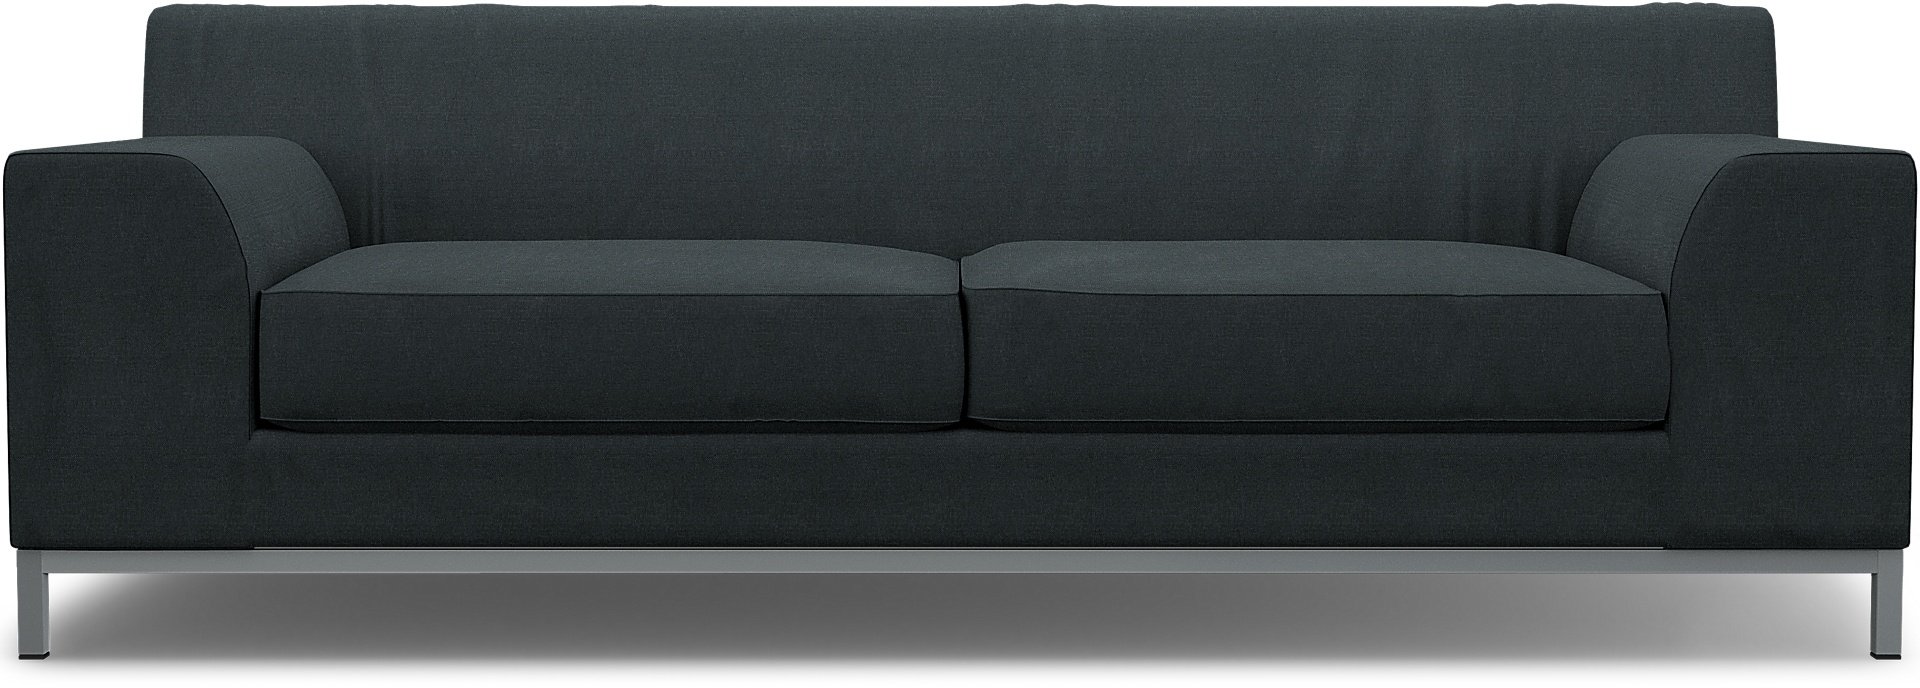 IKEA - Kramfors 3 Seater Sofa Cover, Graphite Grey, Linen - Bemz